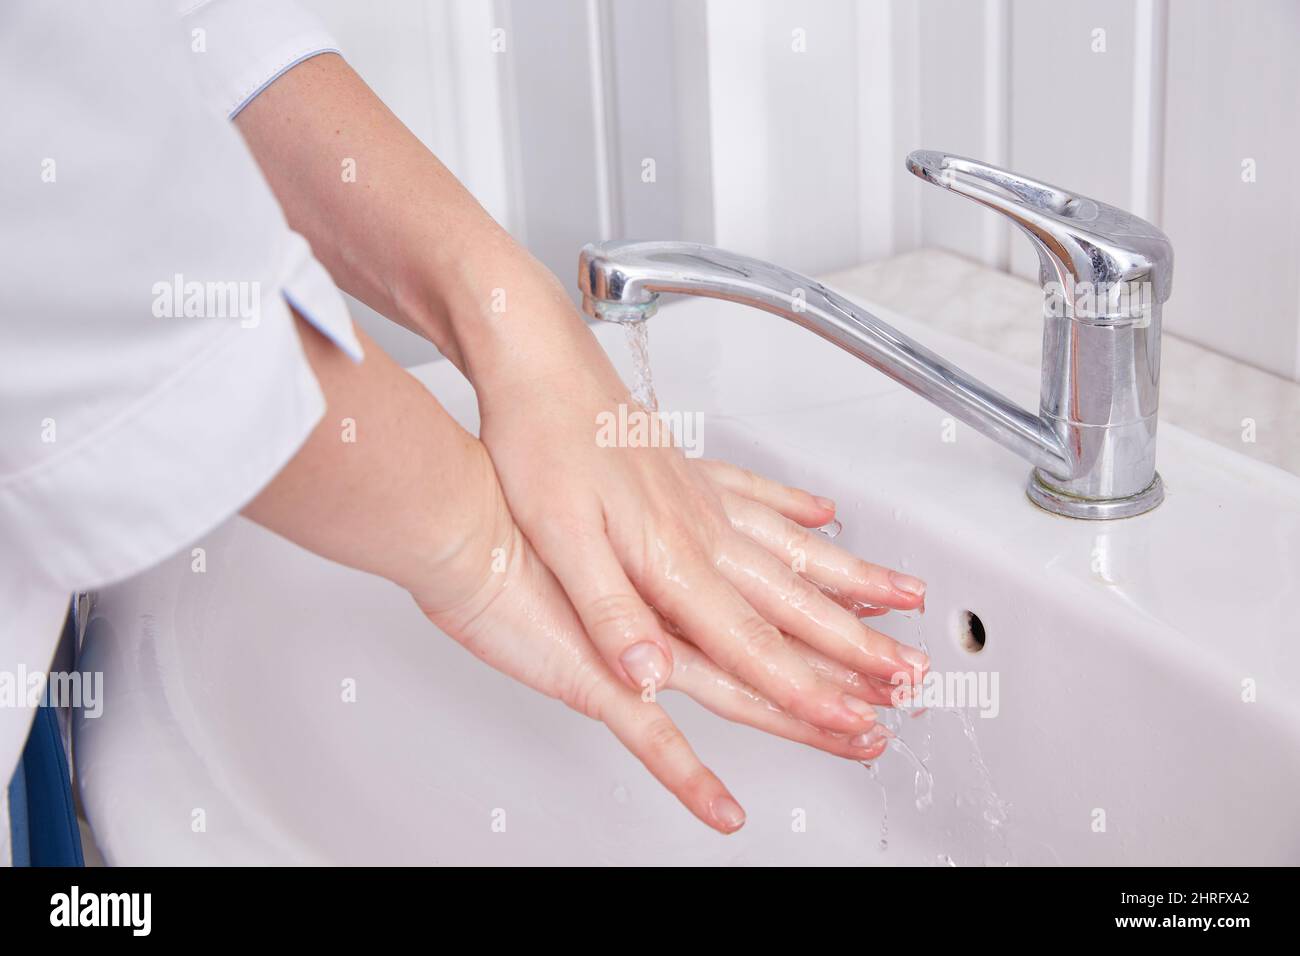 Der Arzt wäscht seine Hände vor der Operation unter fließendem Wasser. Stockfoto